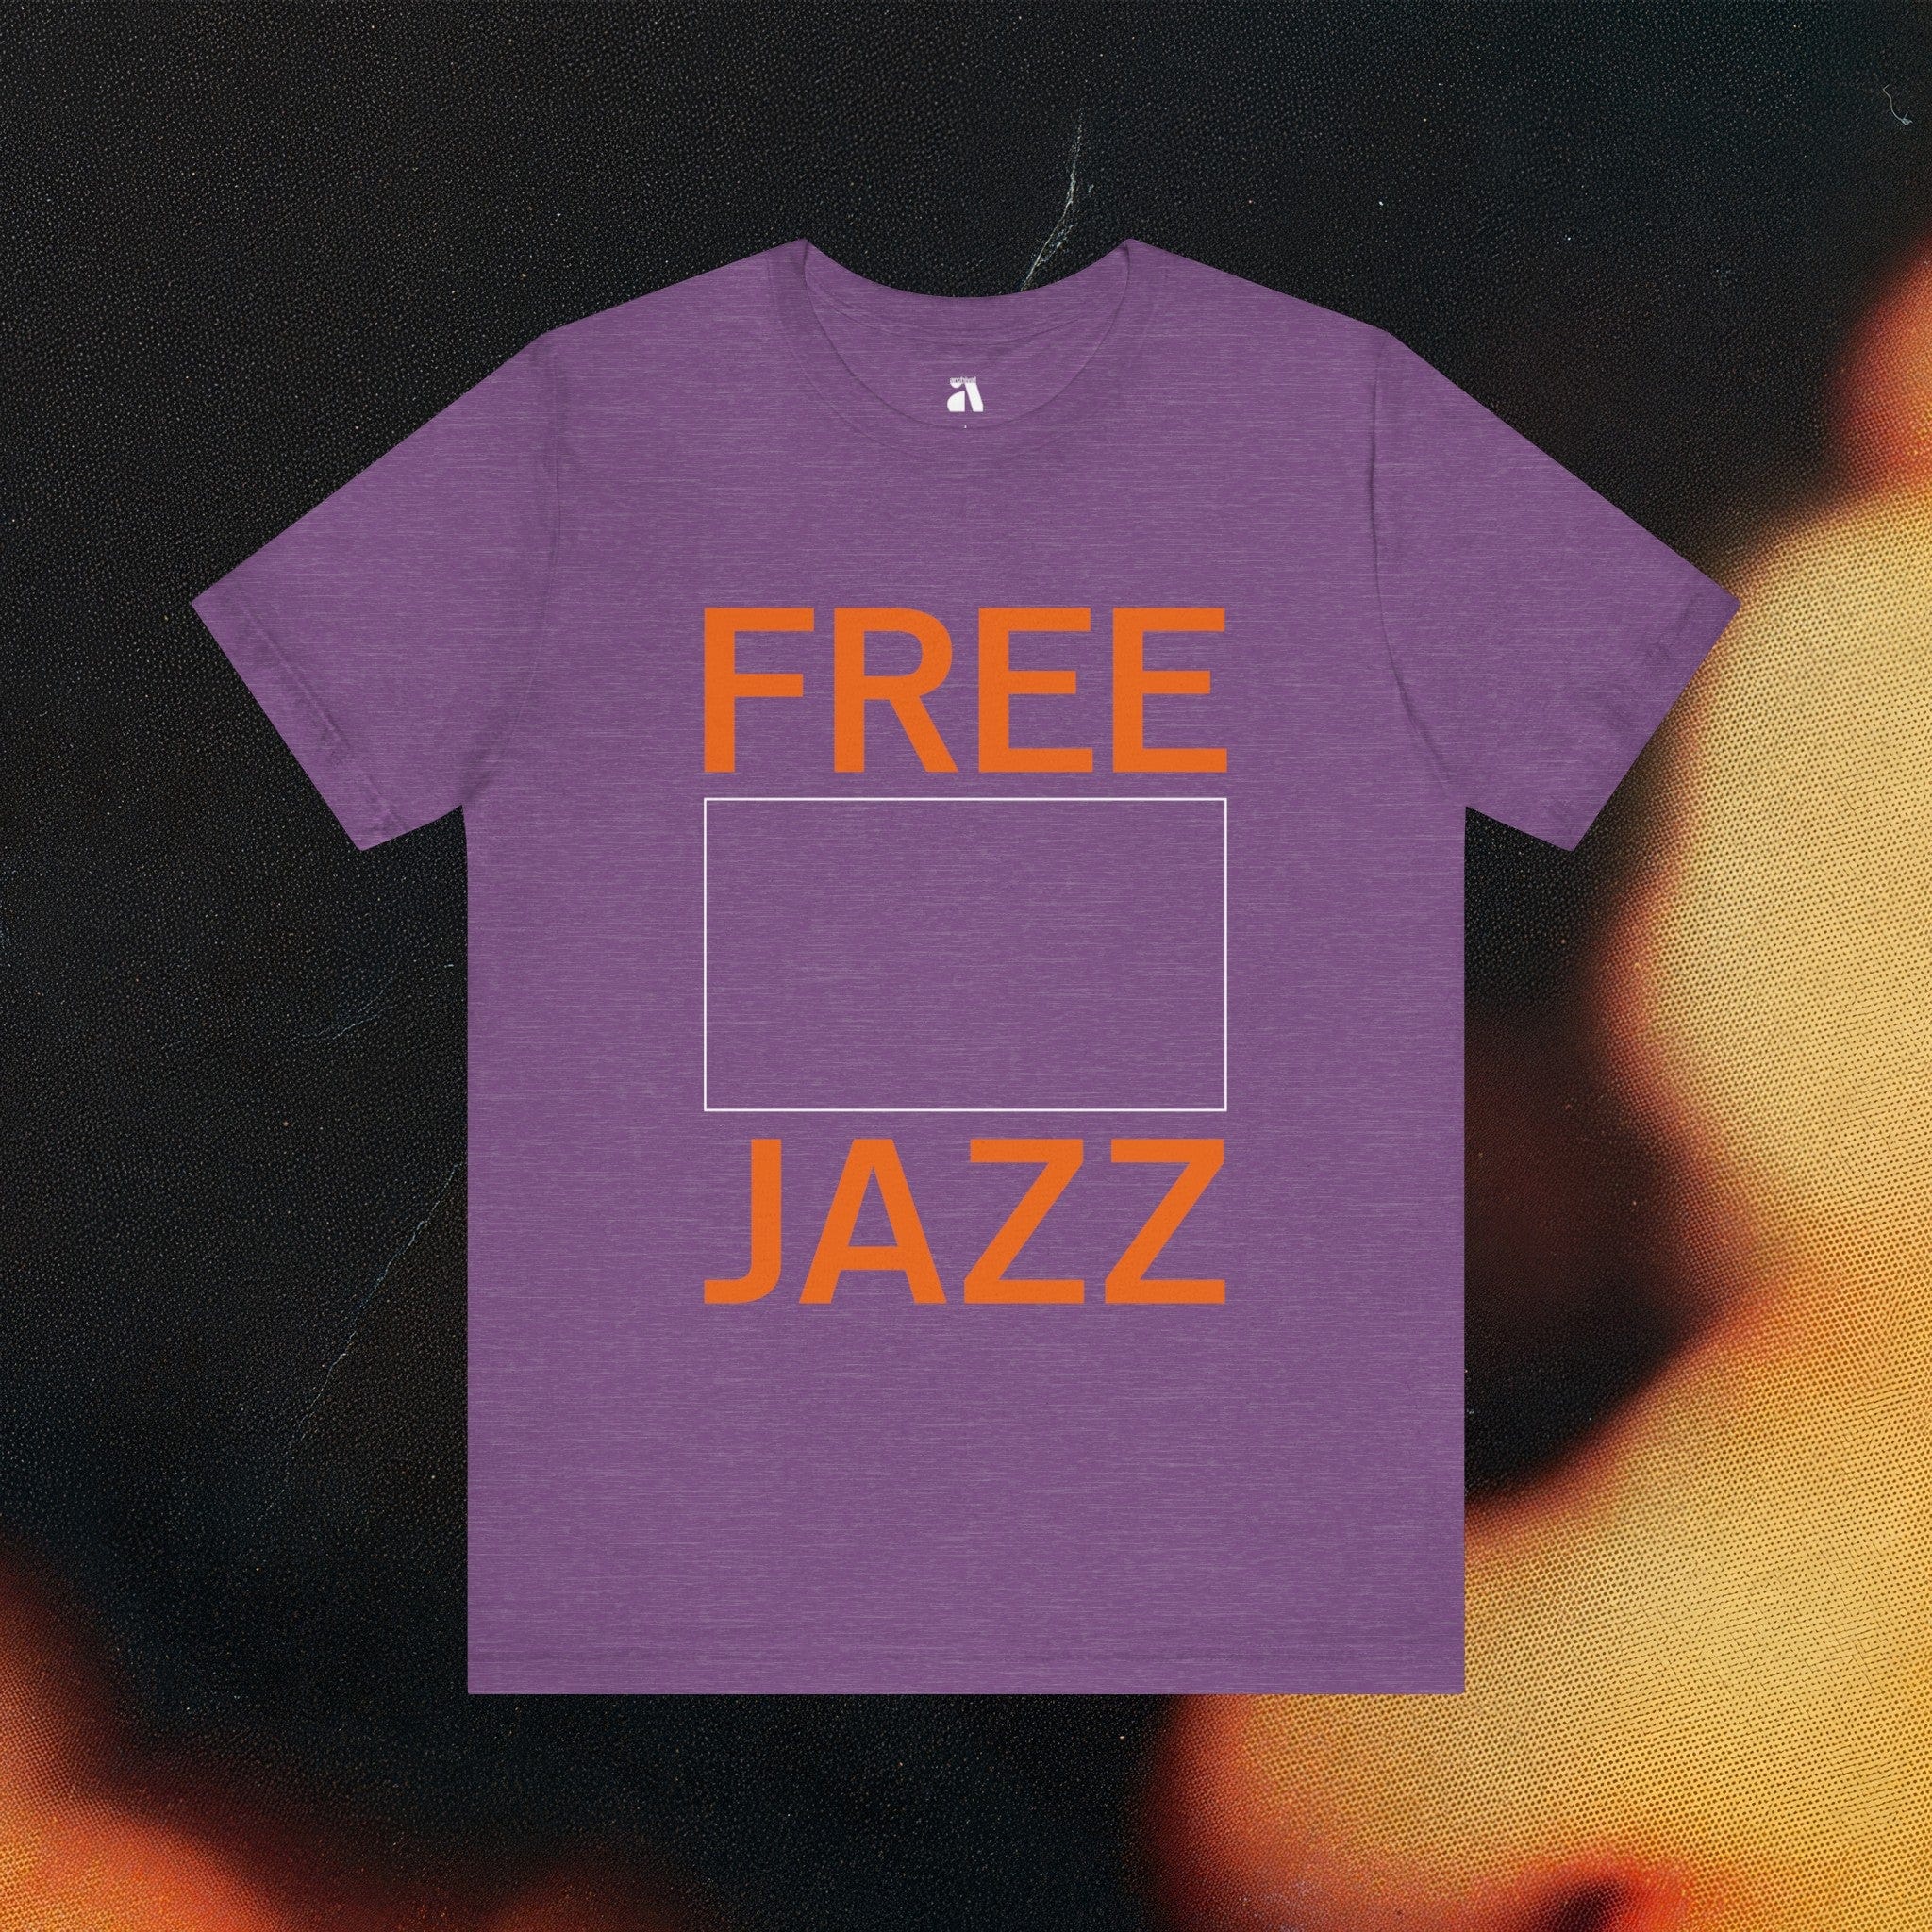 Free Jazz T-Shirt